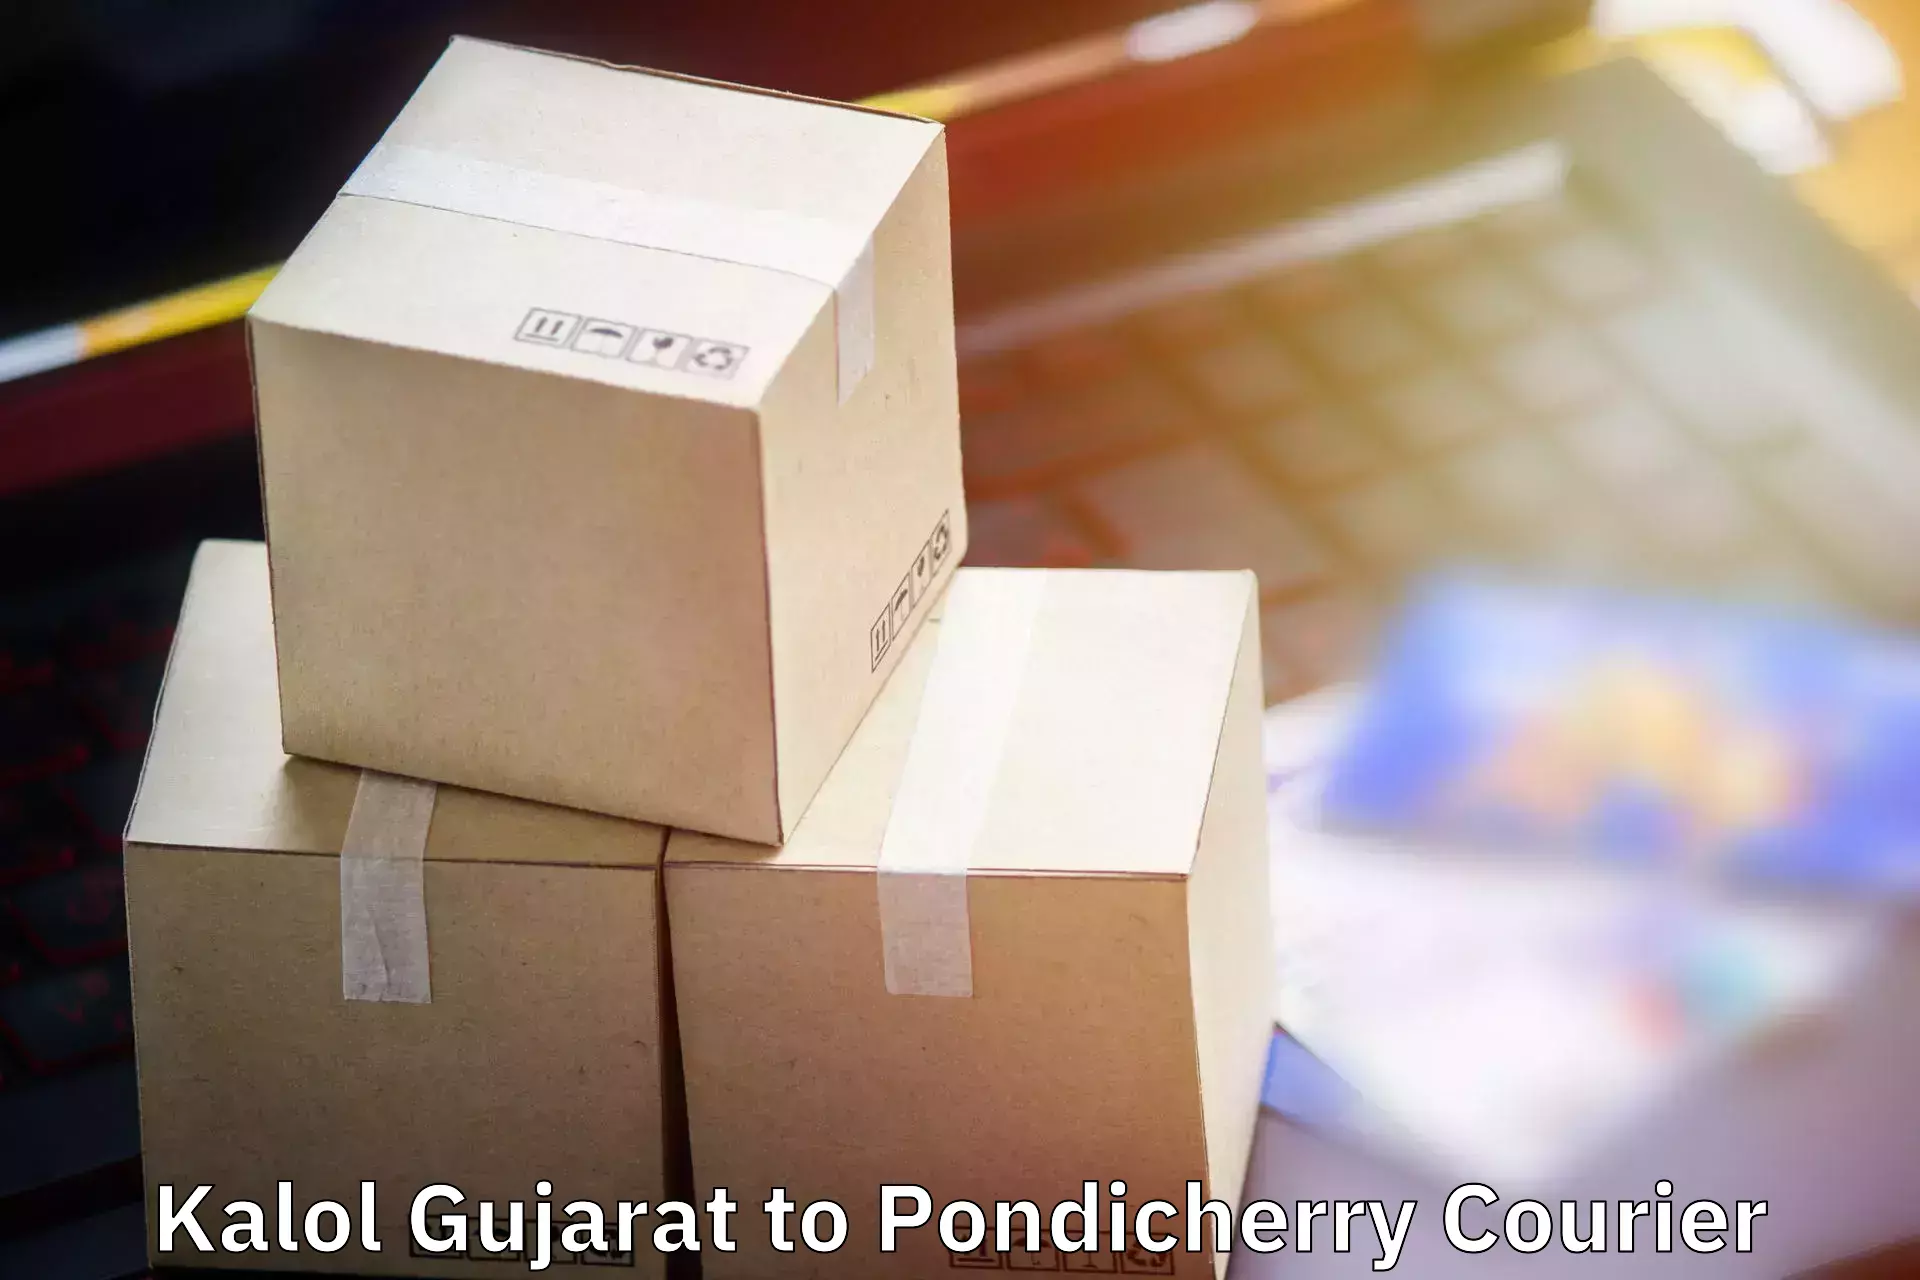 Baggage transport innovation Kalol Gujarat to Pondicherry University